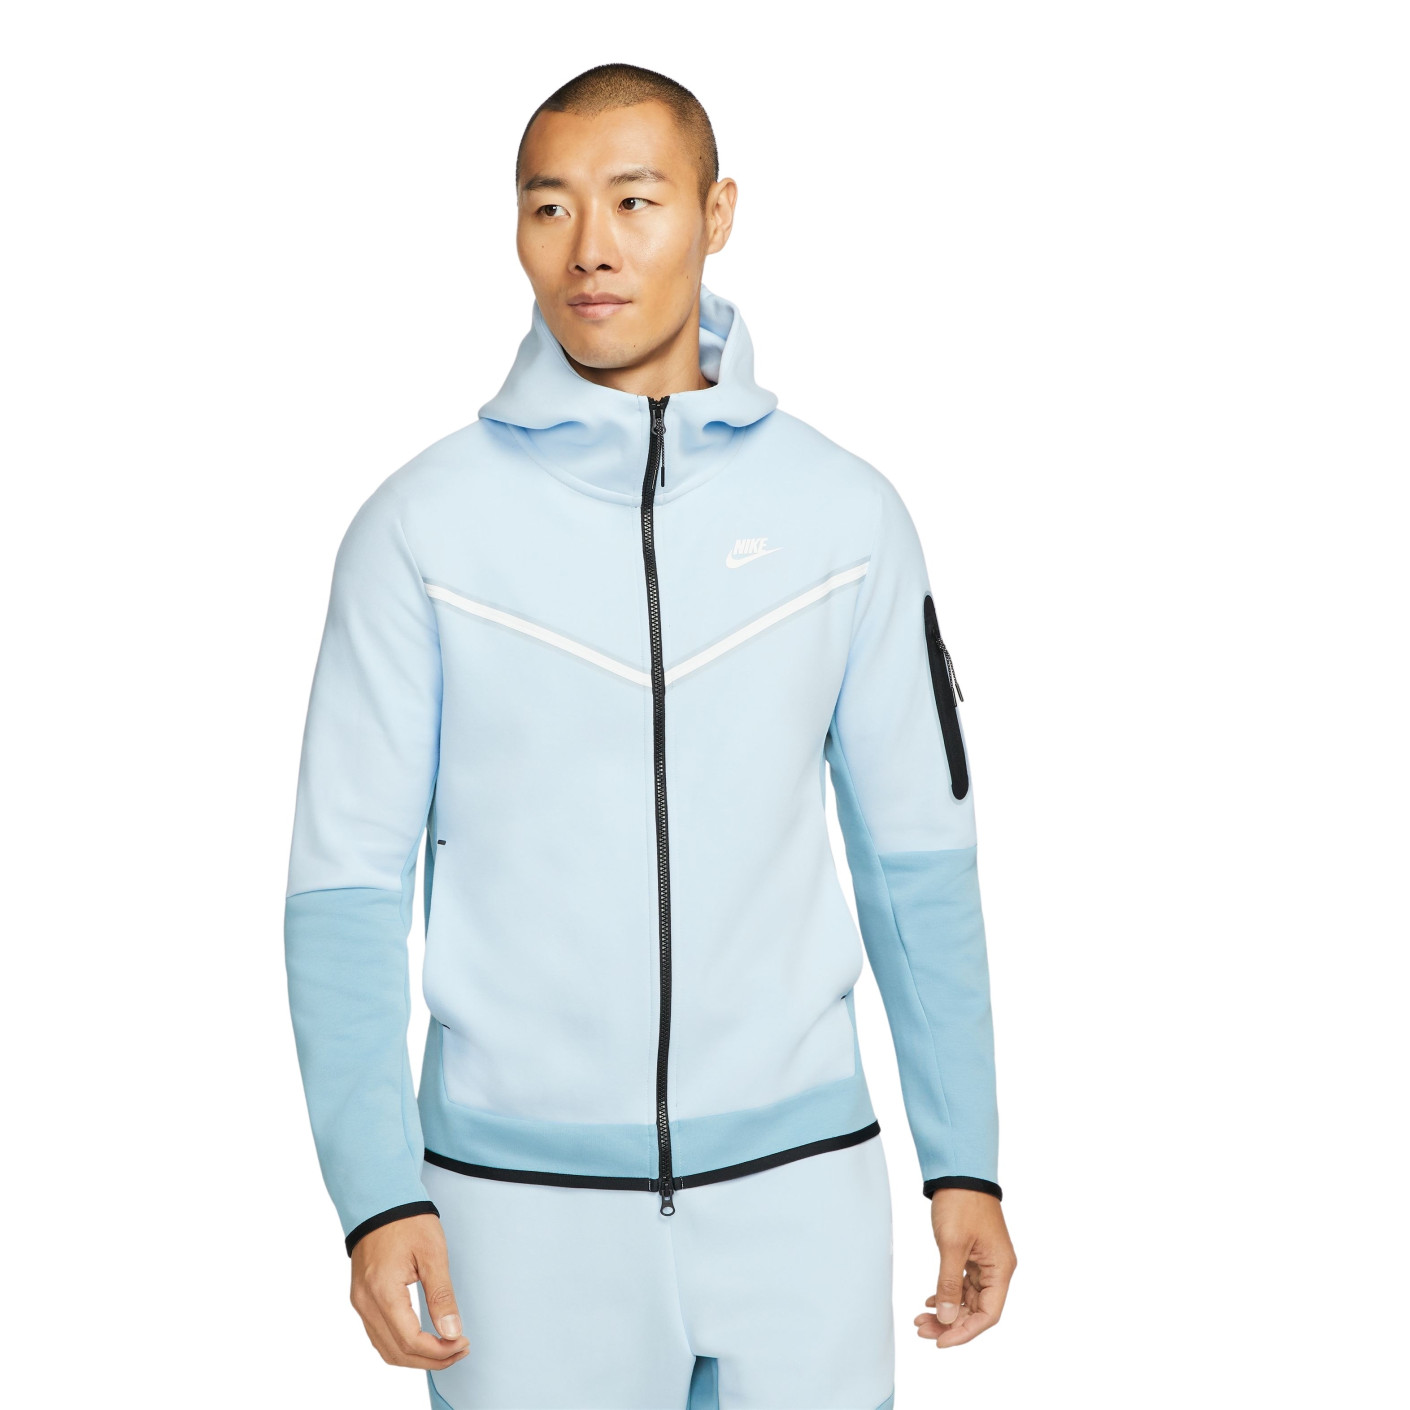 Veste Nike Tech Fleece pour enfants bleu gris clair 